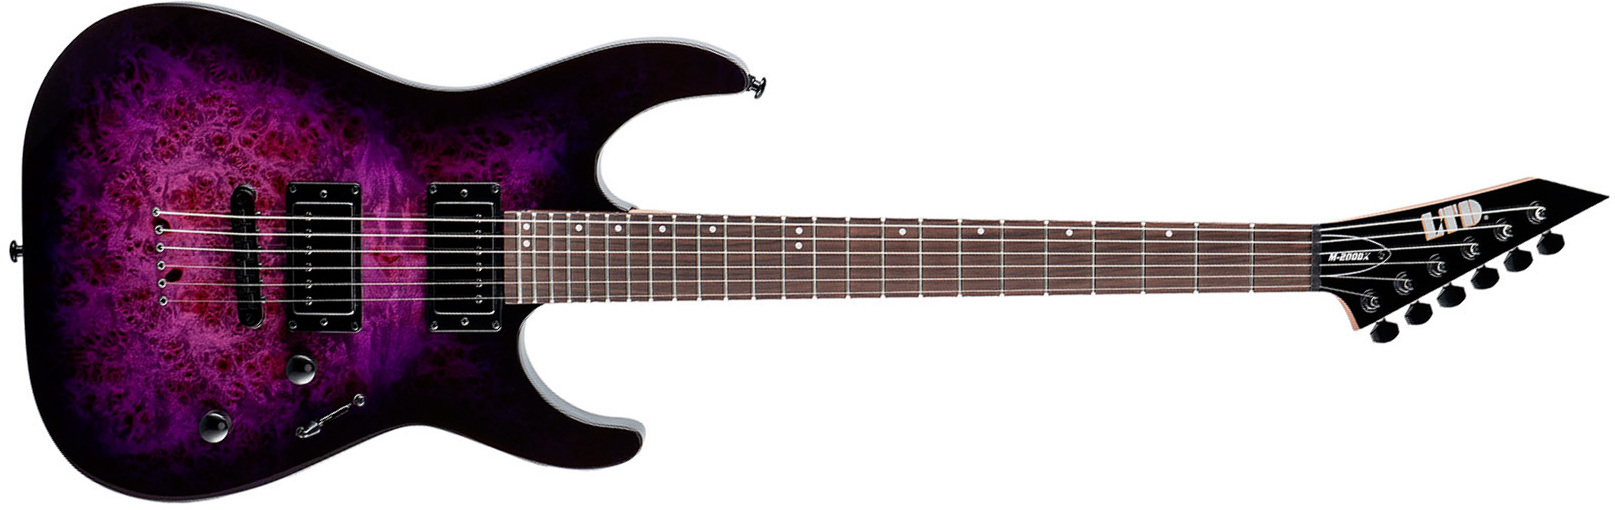 Ltd M200dx 2h Ht Rw - Purple Burst - Elektrische gitaar in Str-vorm - Main picture